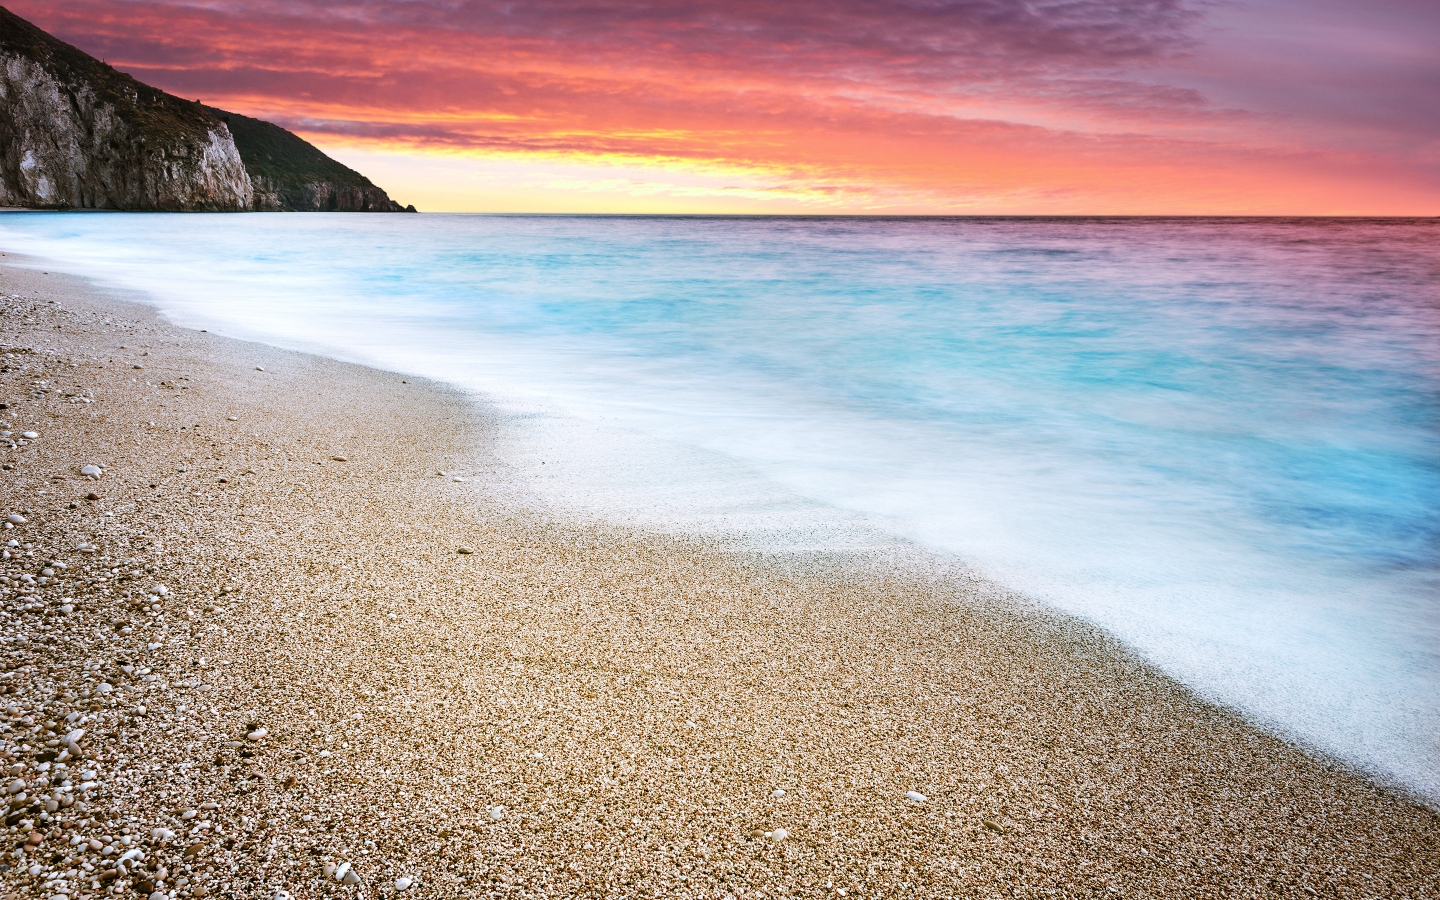 Fire Sunset at Beach for 1440 x 900 widescreen resolution